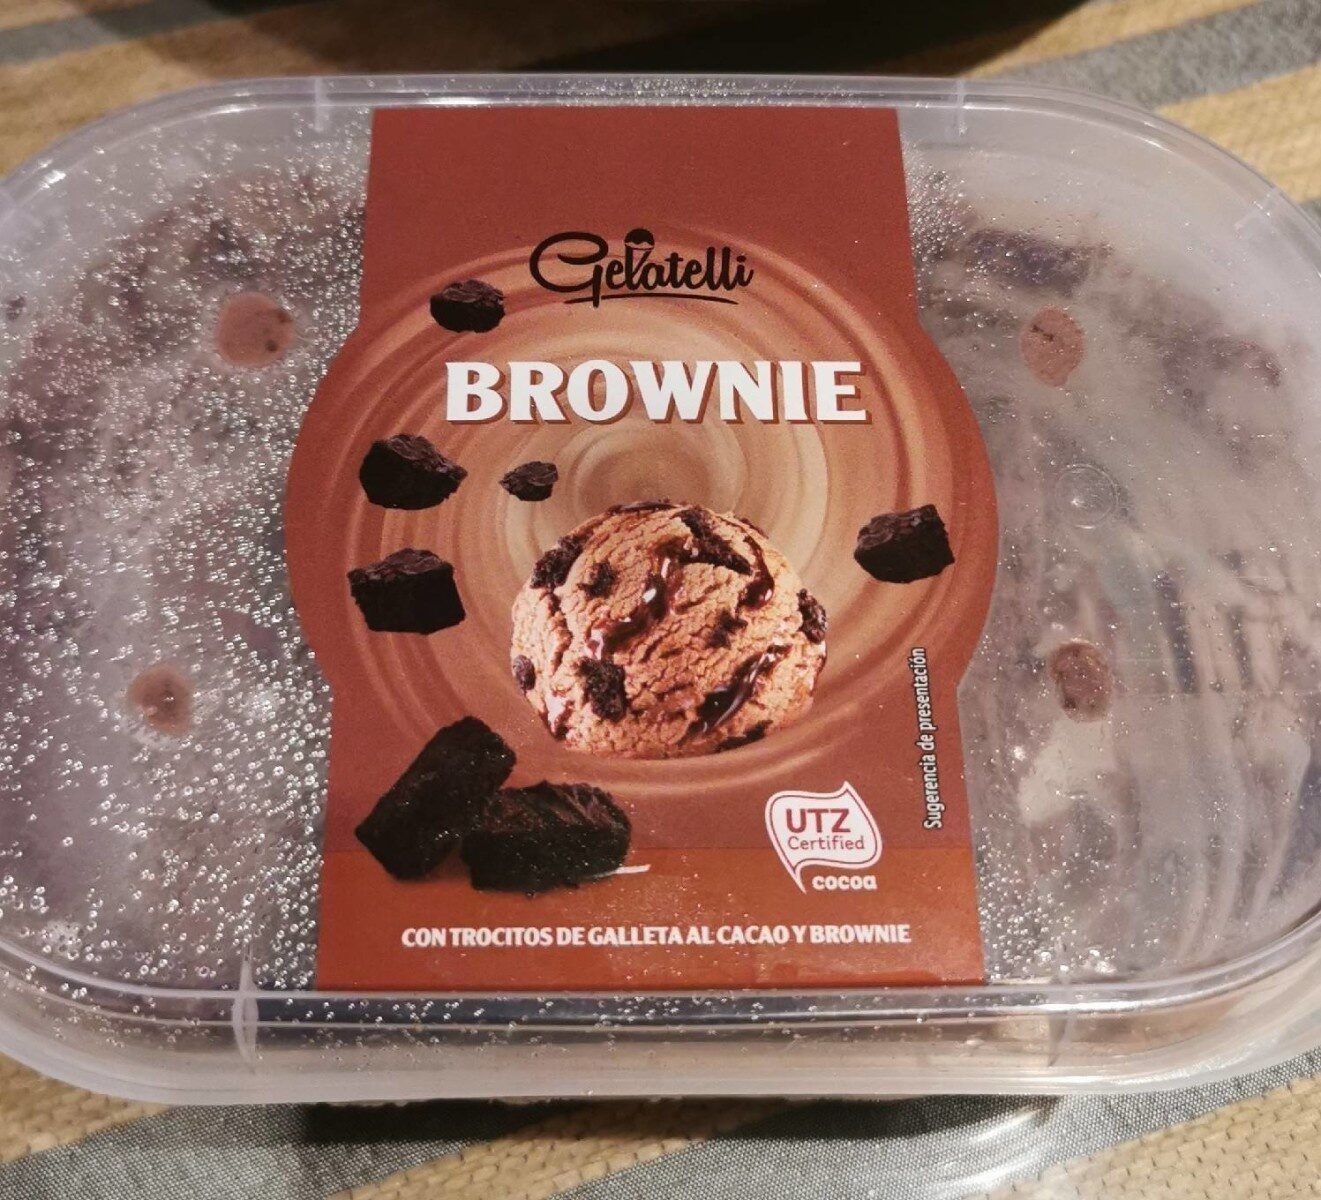 Gelatelli Brownie - Producte - es